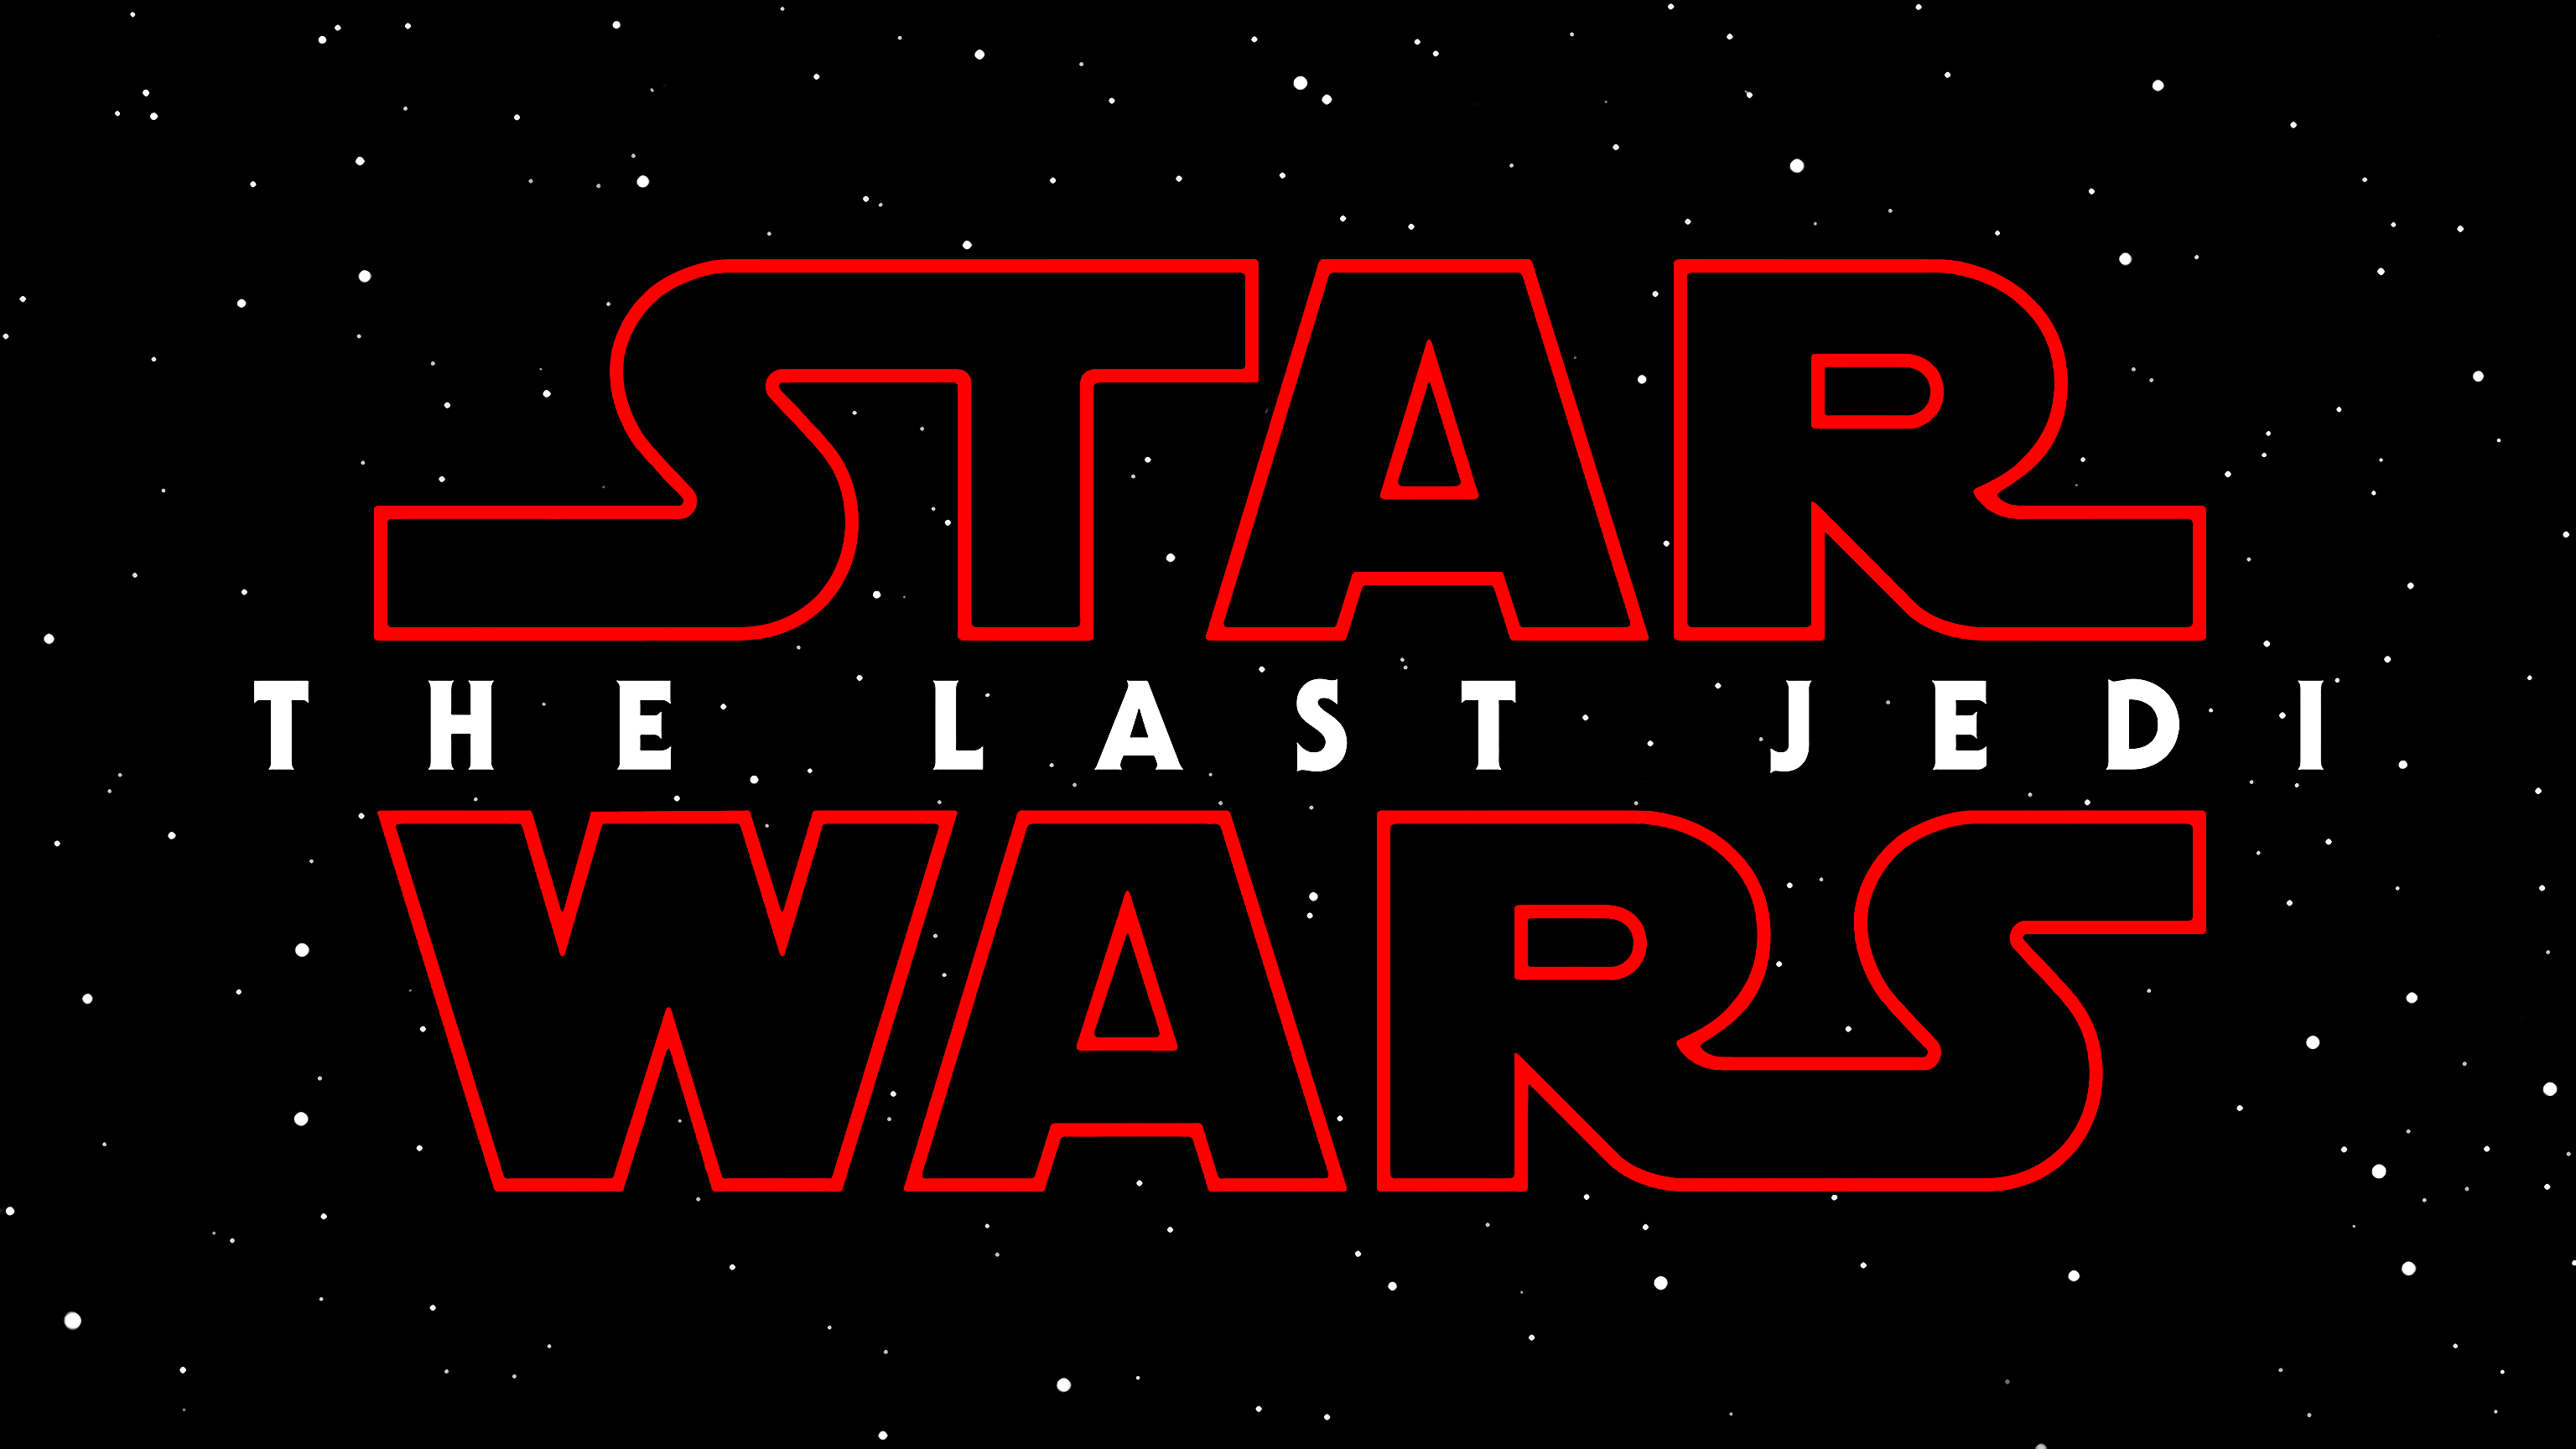 General 3072x1728 Star Wars Star Wars: The Last Jedi typography movies 2017 (Year) digital art